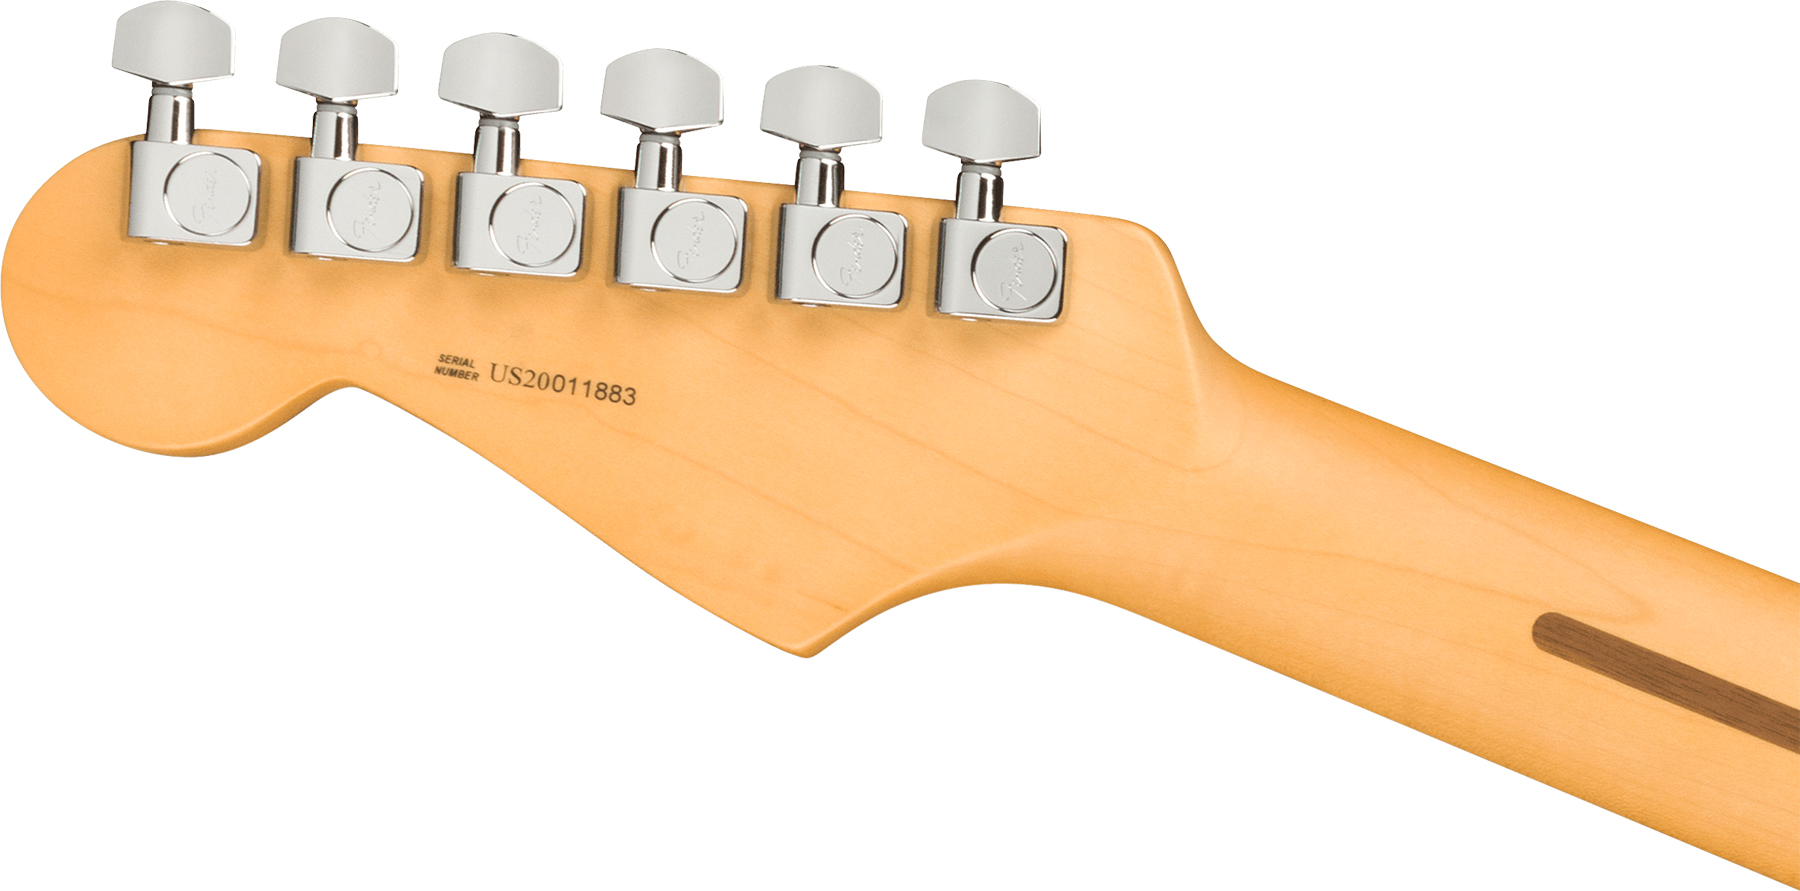 Fender Strat American Professional Ii Hss Usa Mn - 3-color Sunburst - Str shape electric guitar - Variation 3